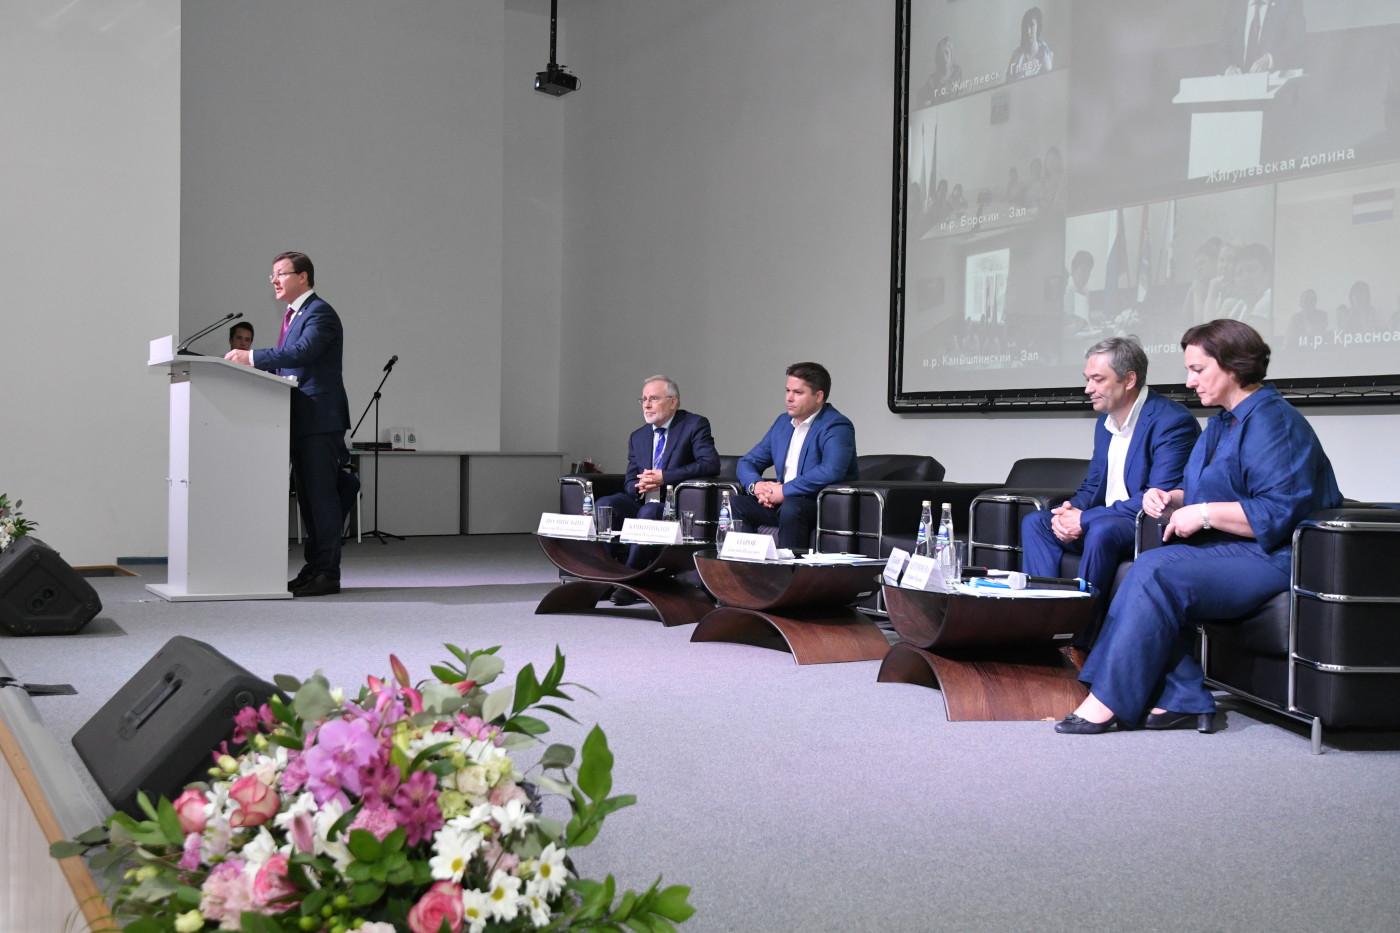 Губернатор Самарской области Дмитрий Азаров (в центре) отметил, выступая на Социальном форуме, что сотрудничество органов власти с научными, общественными и коммерческими организациями "кратно увеличивает их возможности"